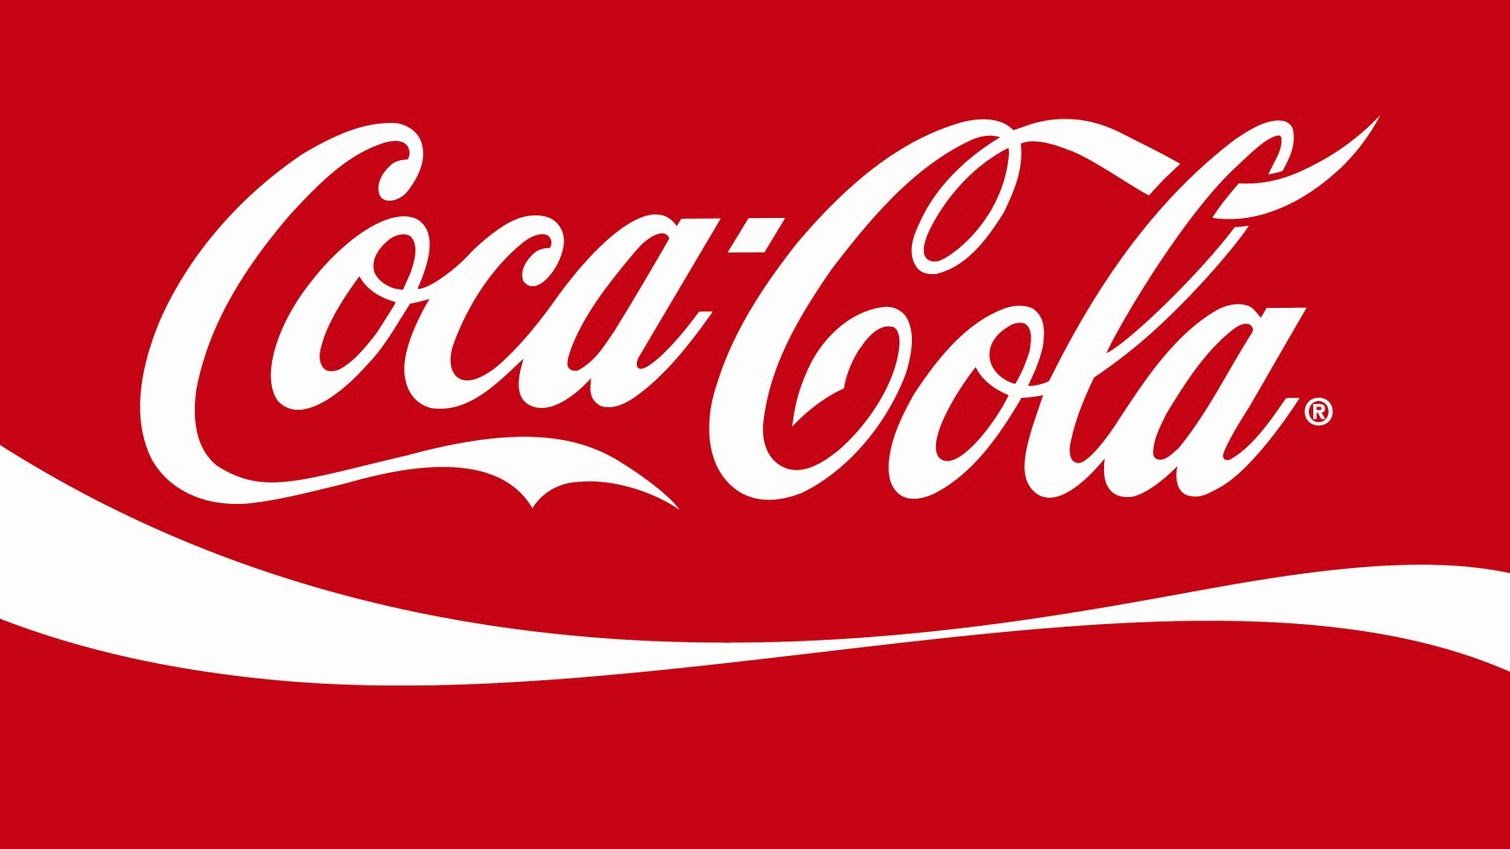 Coca-Cola Brasil está com vagas de emprego abertas em vários estados. Confira!